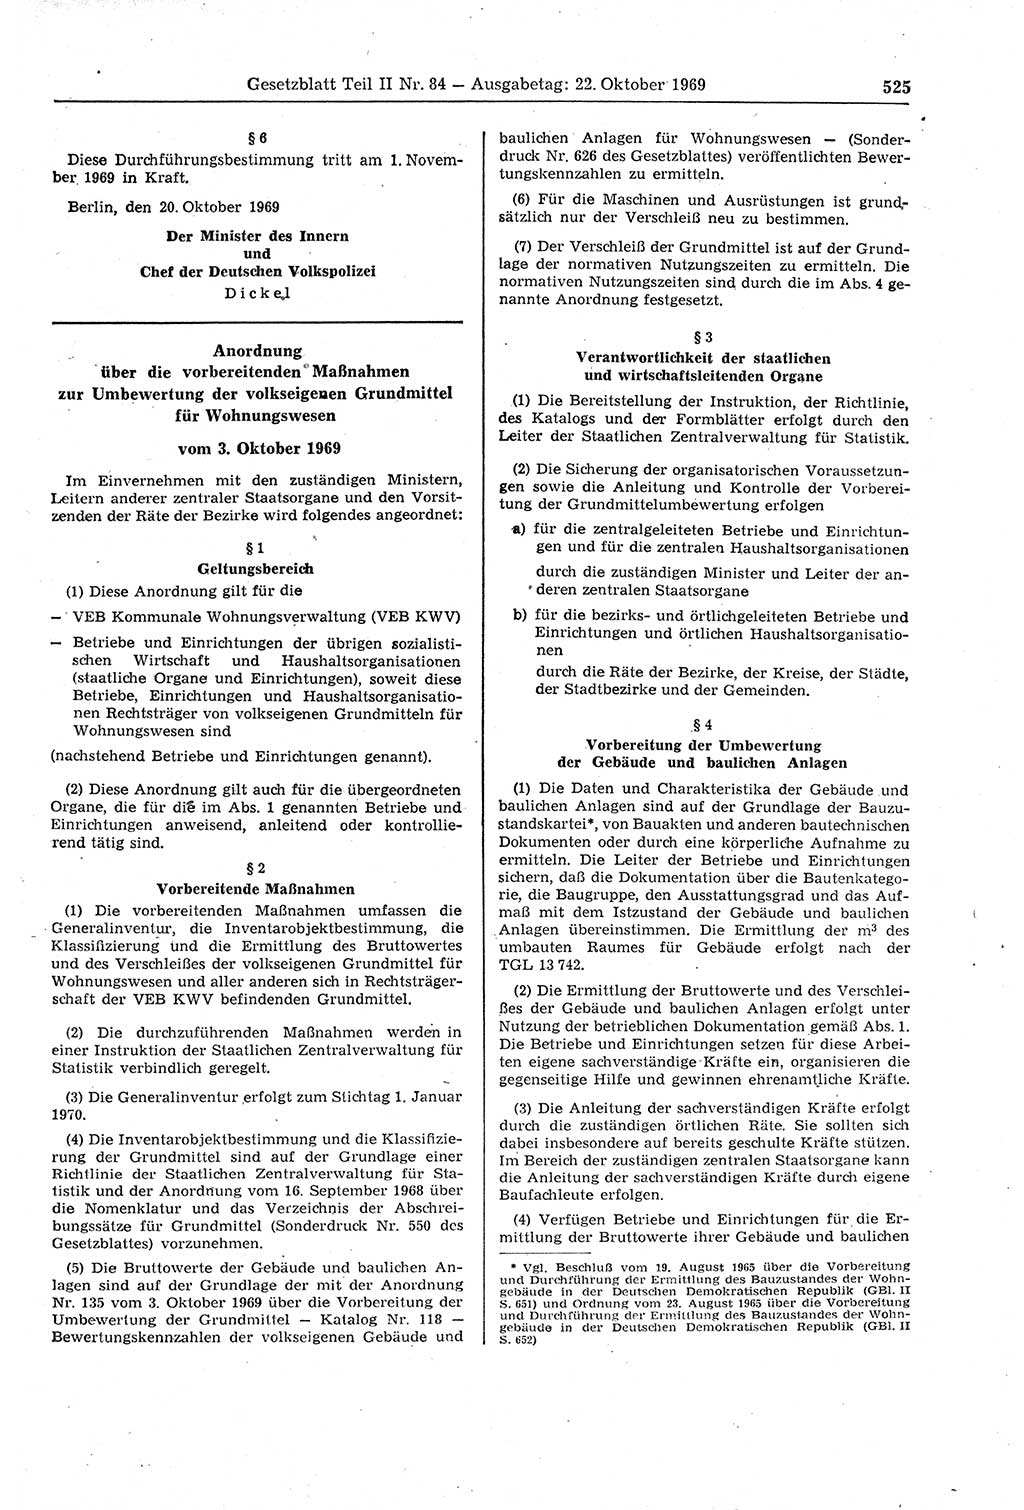 Gesetzblatt (GBl.) der Deutschen Demokratischen Republik (DDR) Teil ⅠⅠ 1969, Seite 525 (GBl. DDR ⅠⅠ 1969, S. 525)